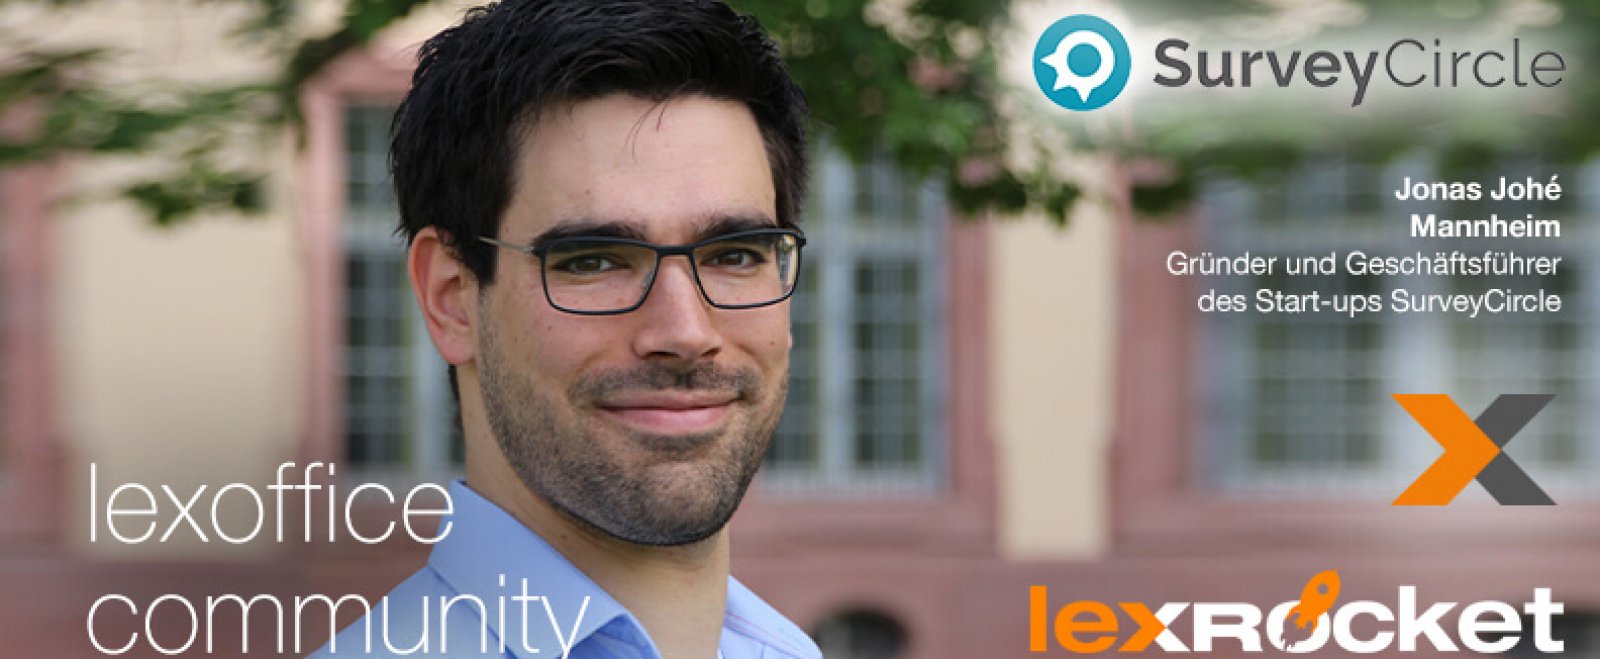 lexRocket & lexoffice Community Interview: Jonas Johé von surveycircle